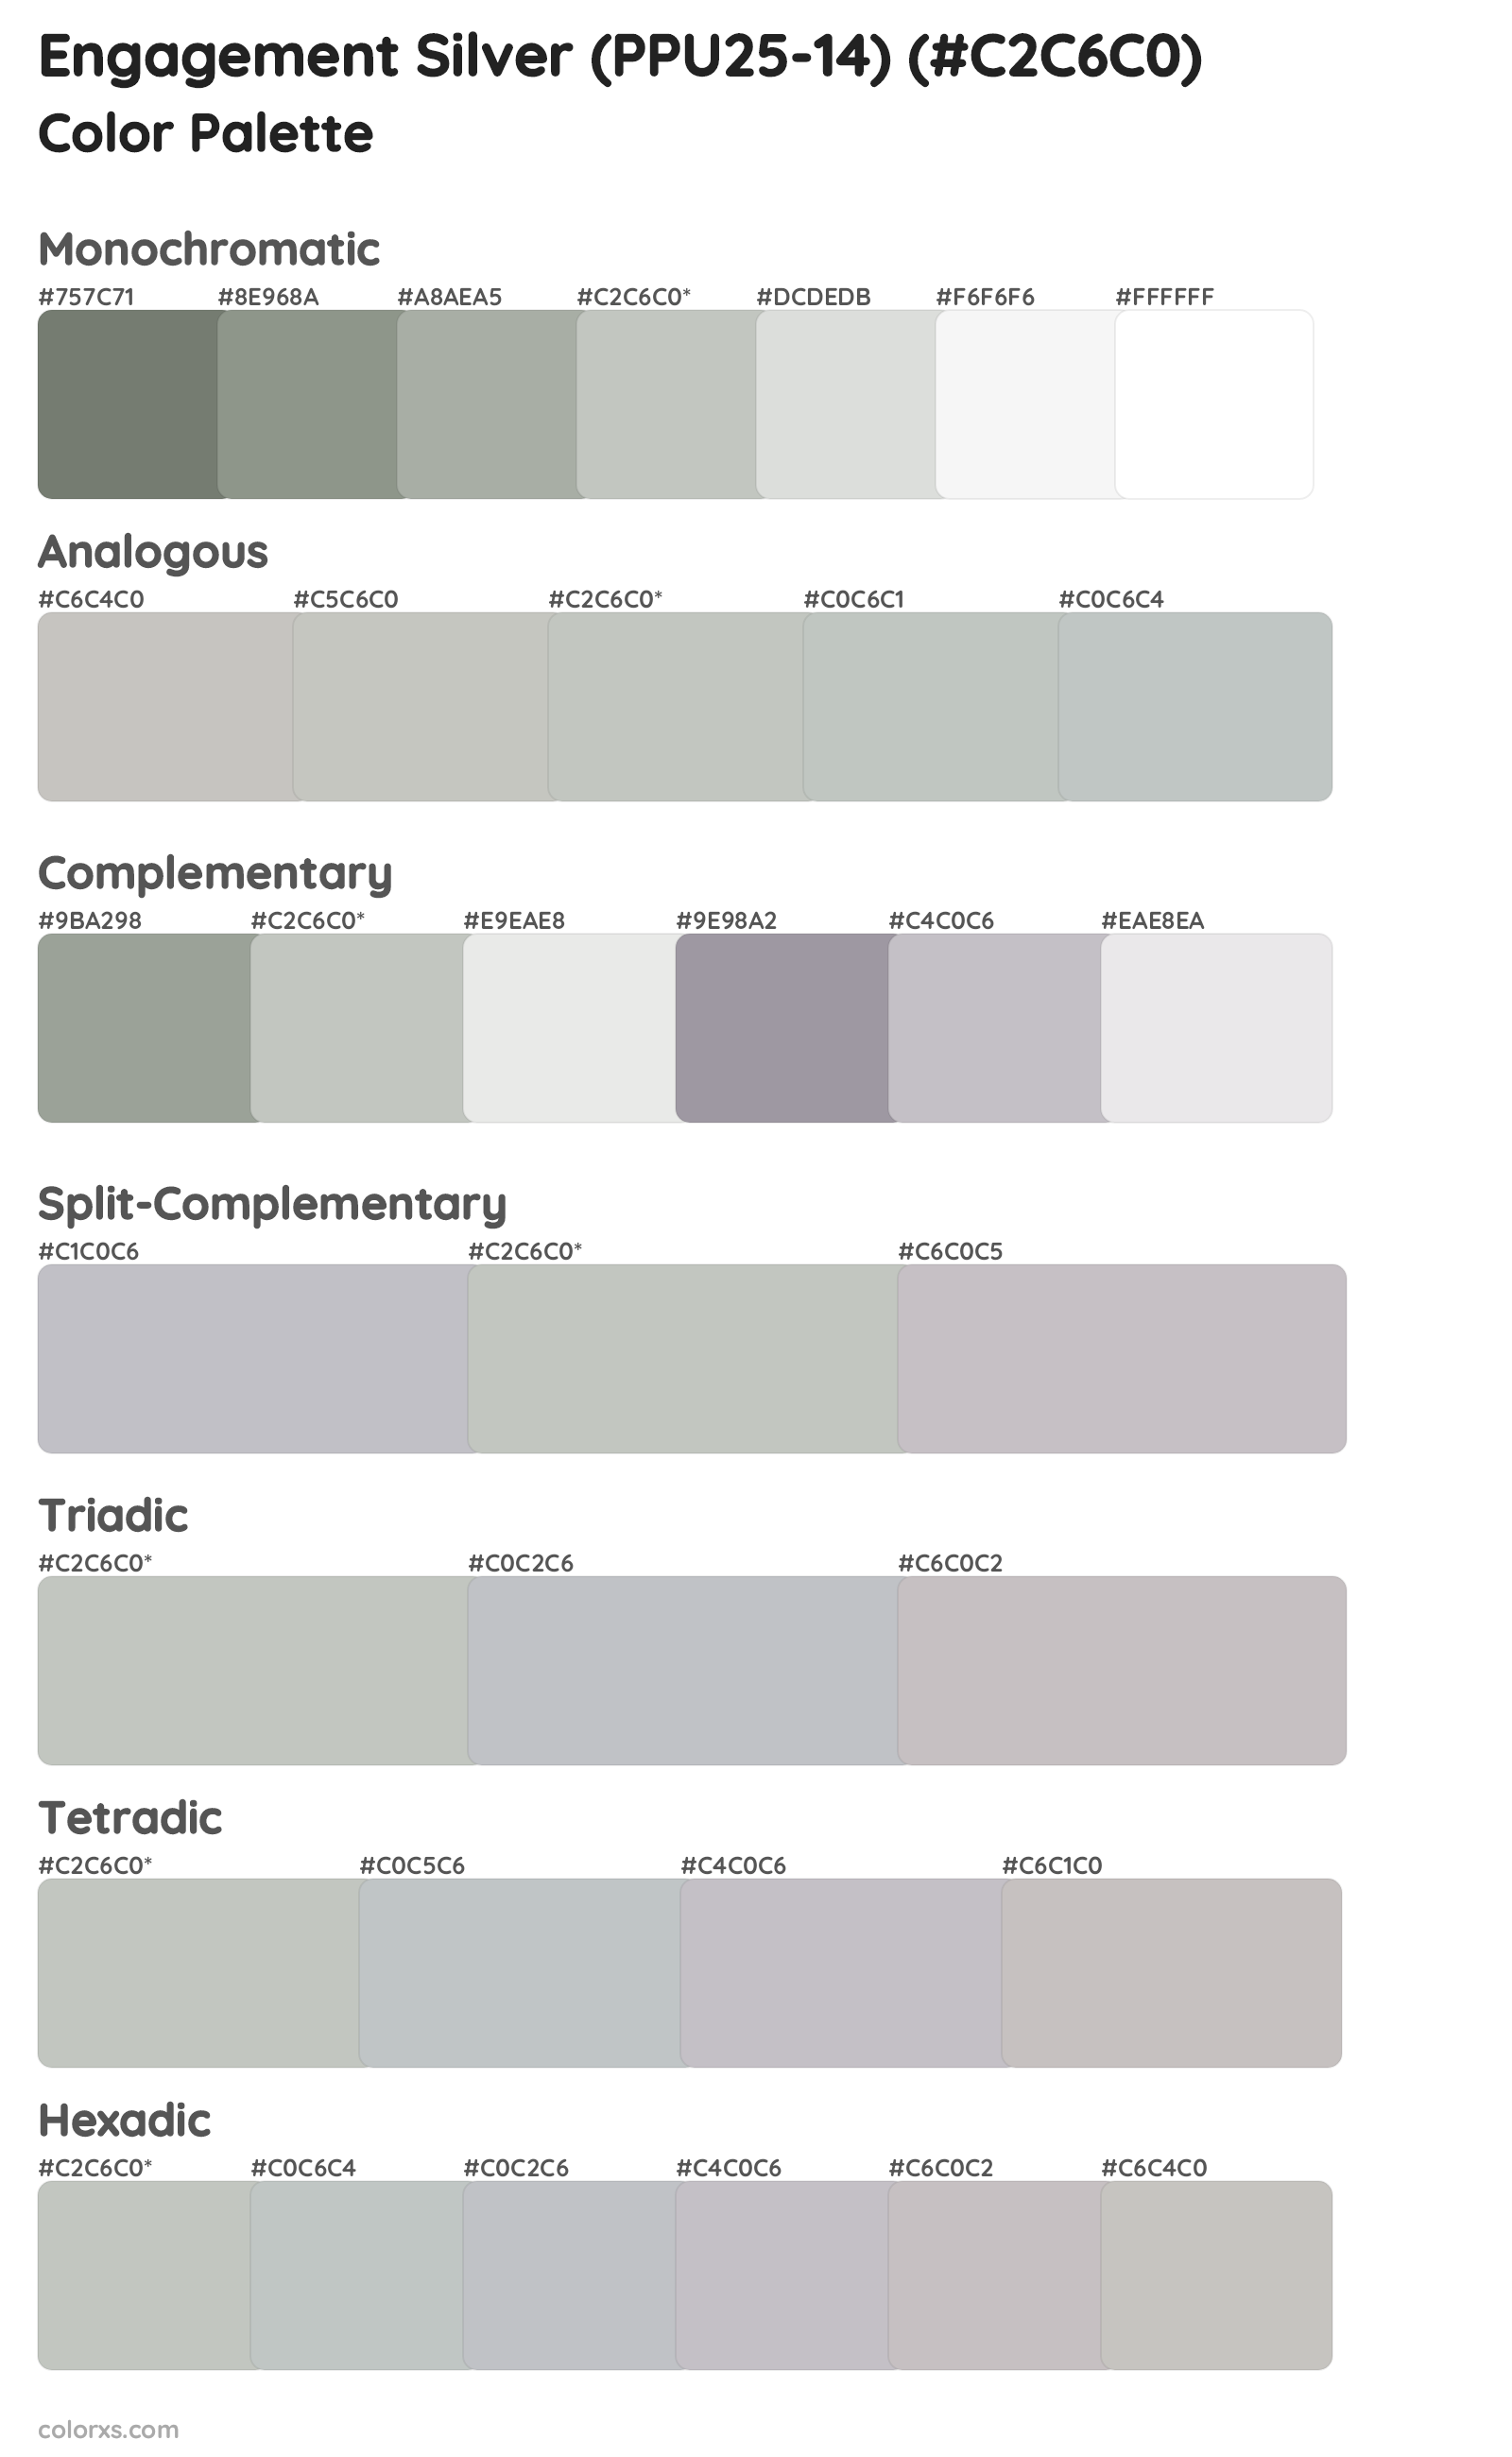 Engagement Silver (PPU25-14) Color Scheme Palettes